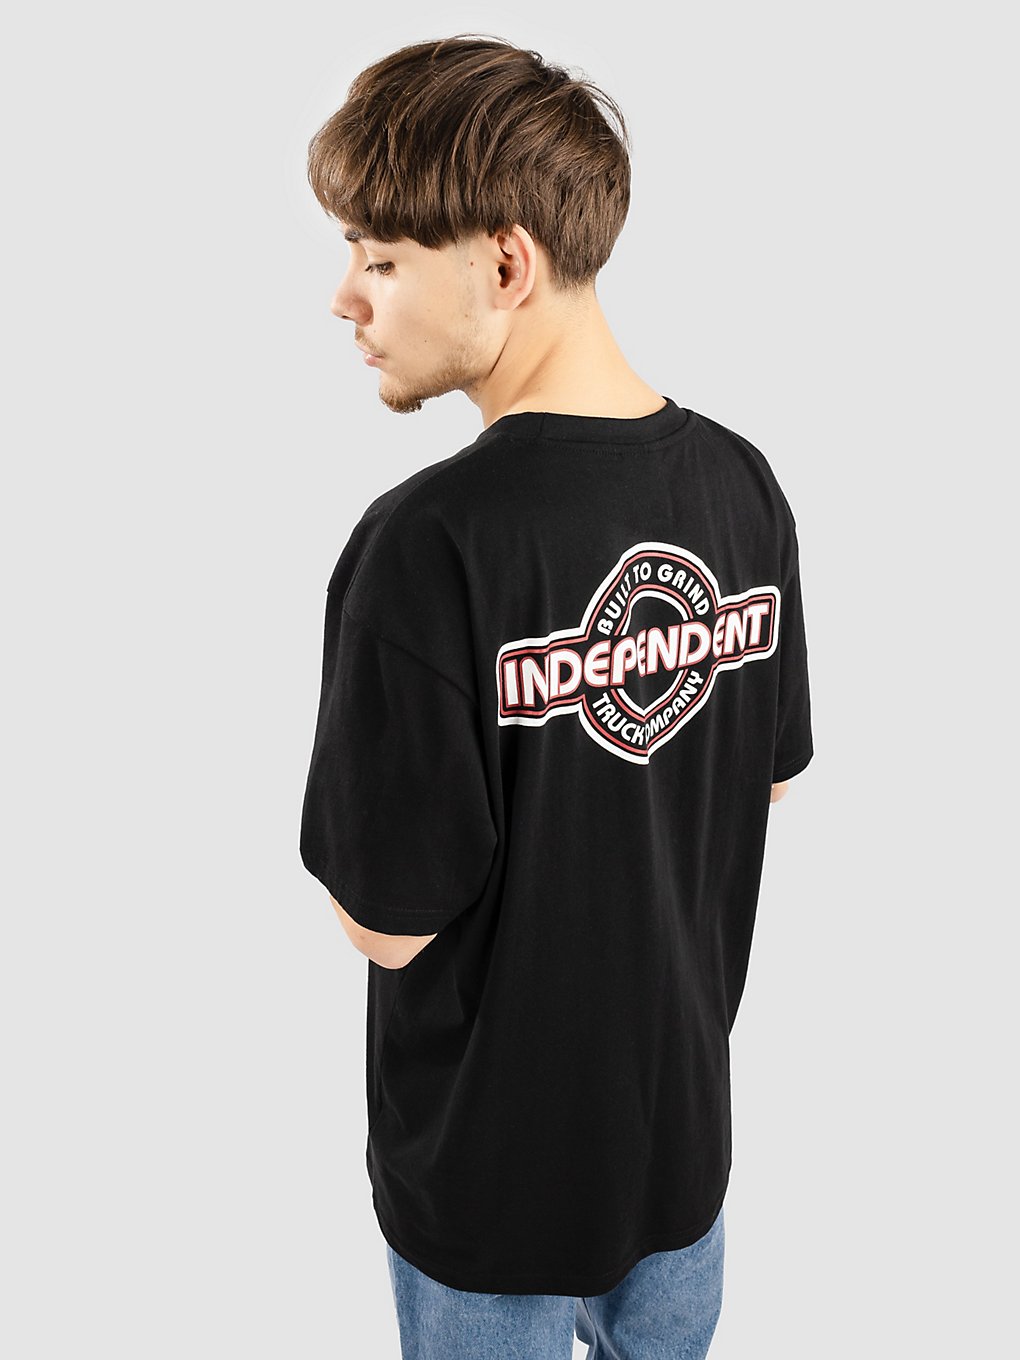 Independent BTG Bauhaus T-Shirt zwart